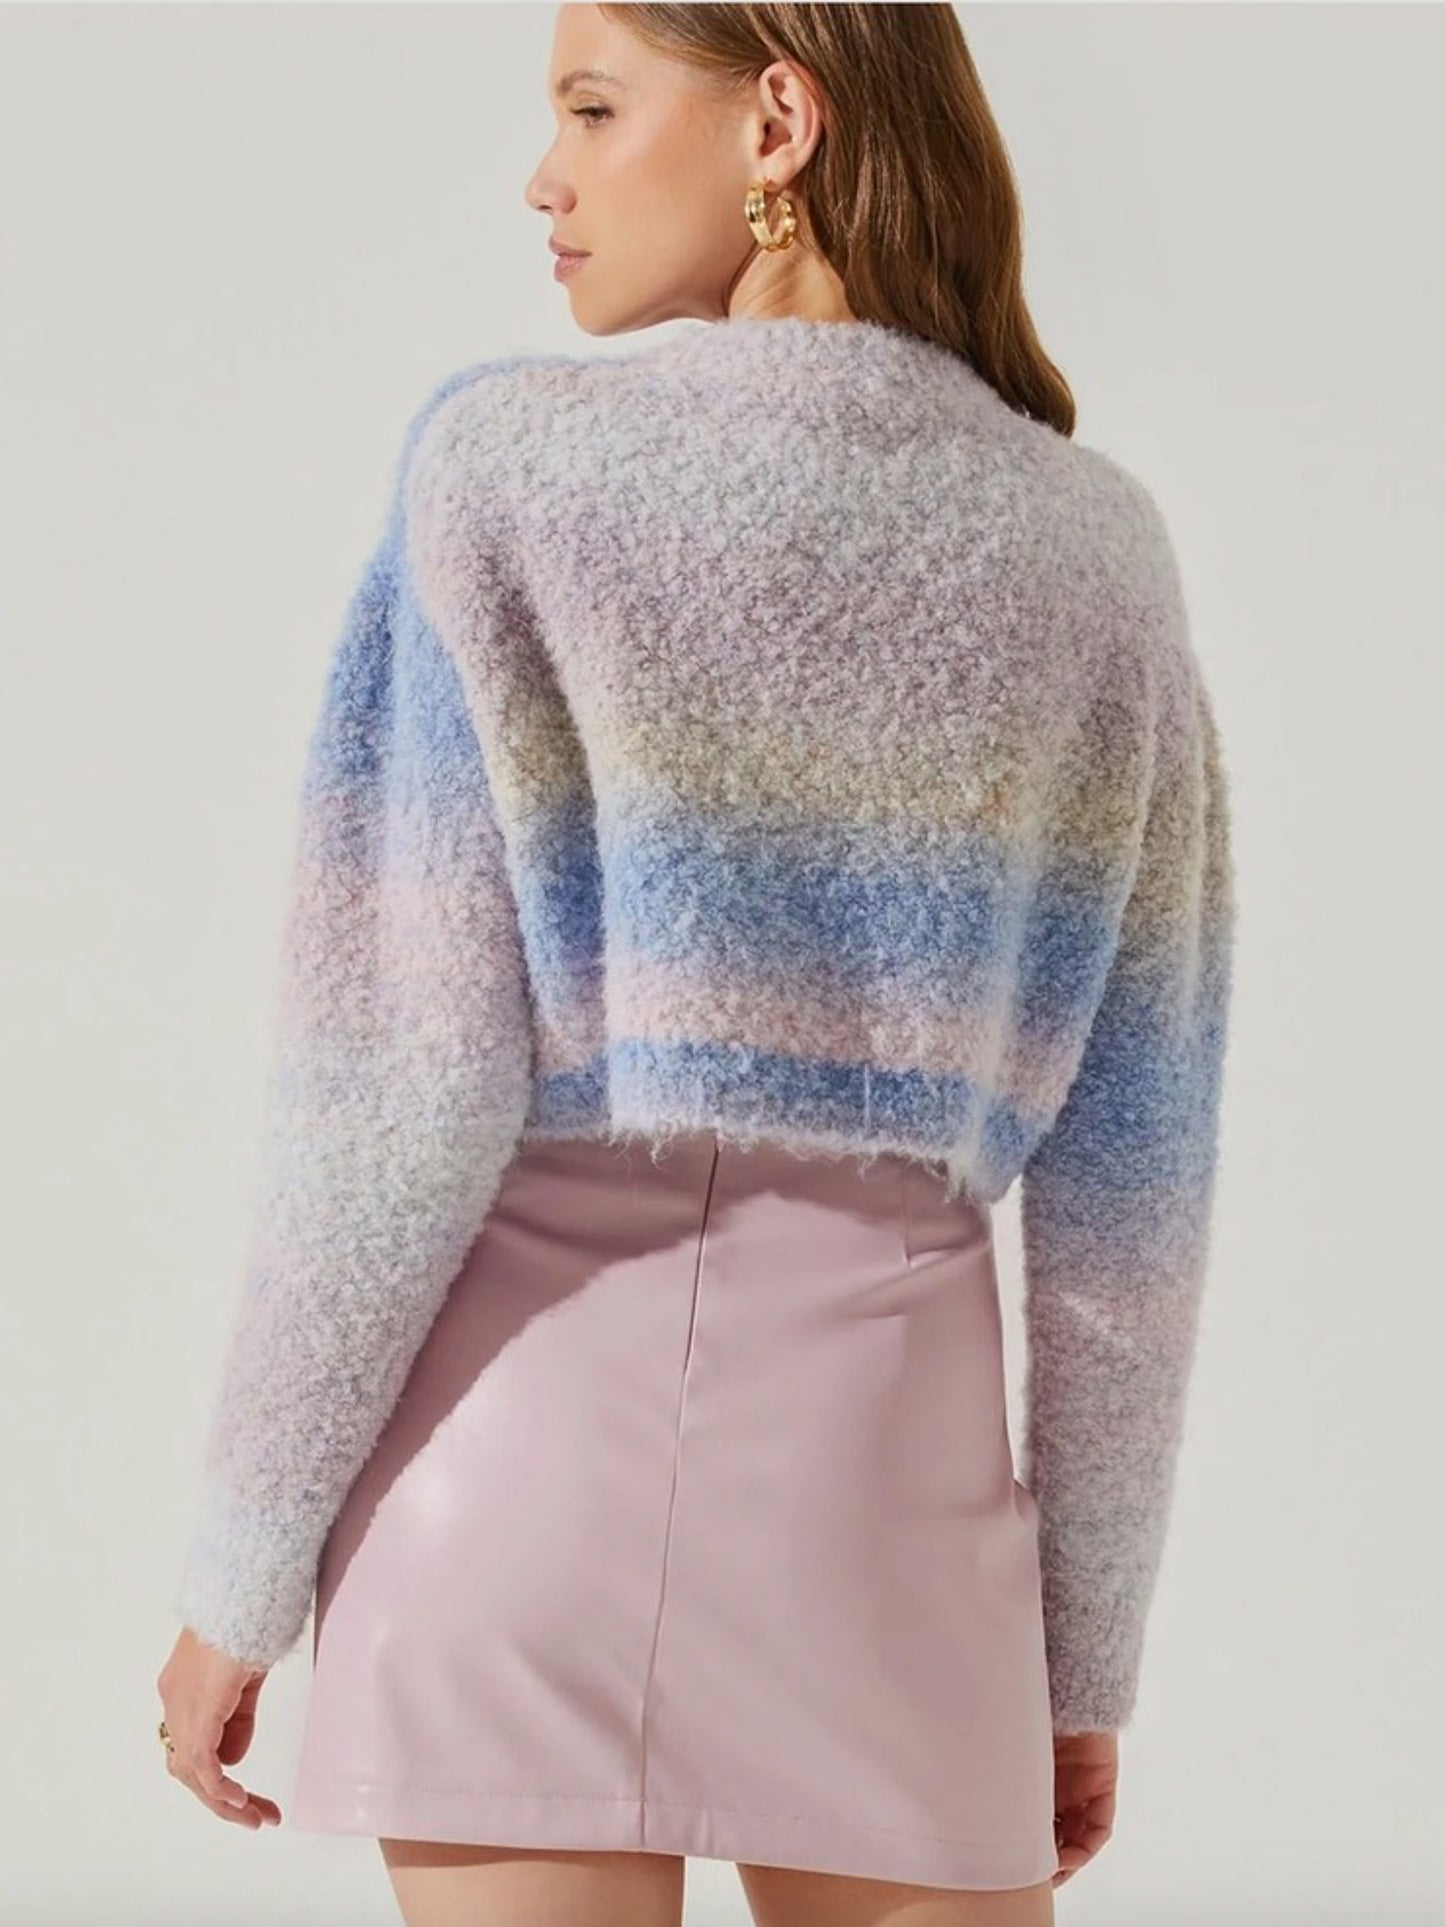 Alita Sweater